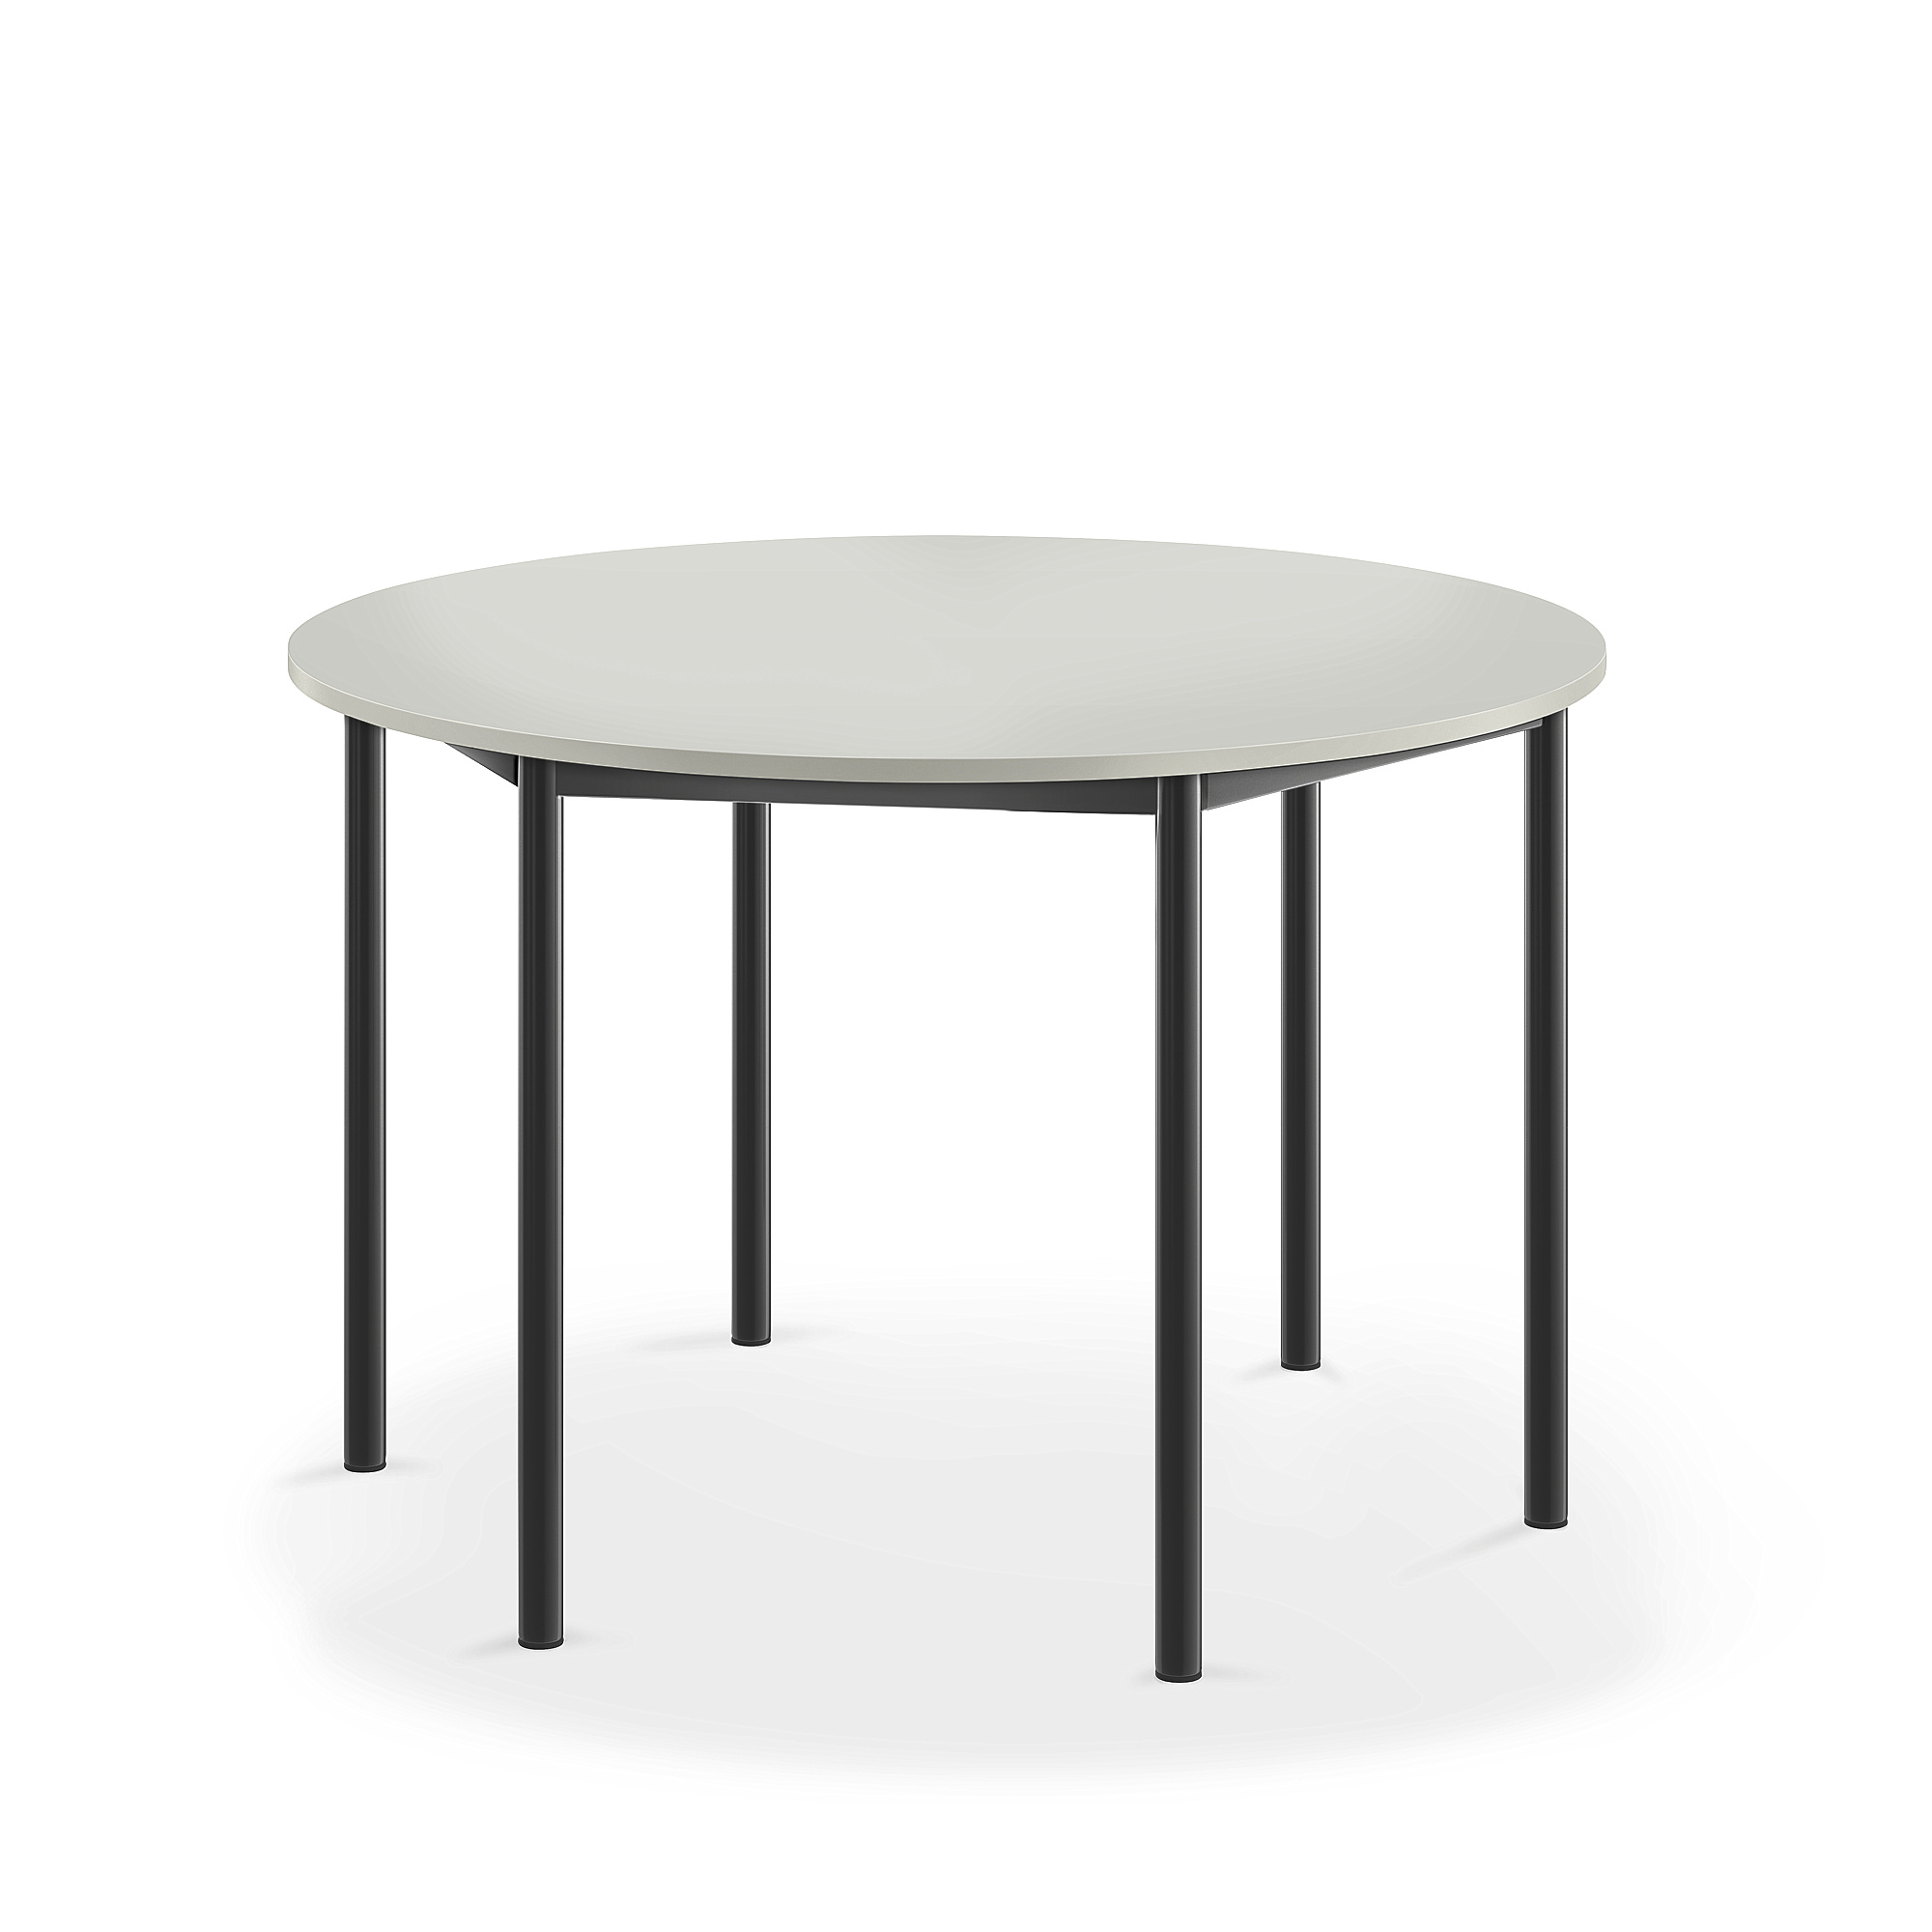 Stůl SONITUS, Ø1200x760 mm, antracitově šedé nohy, HPL deska tlumící hluk, šedá